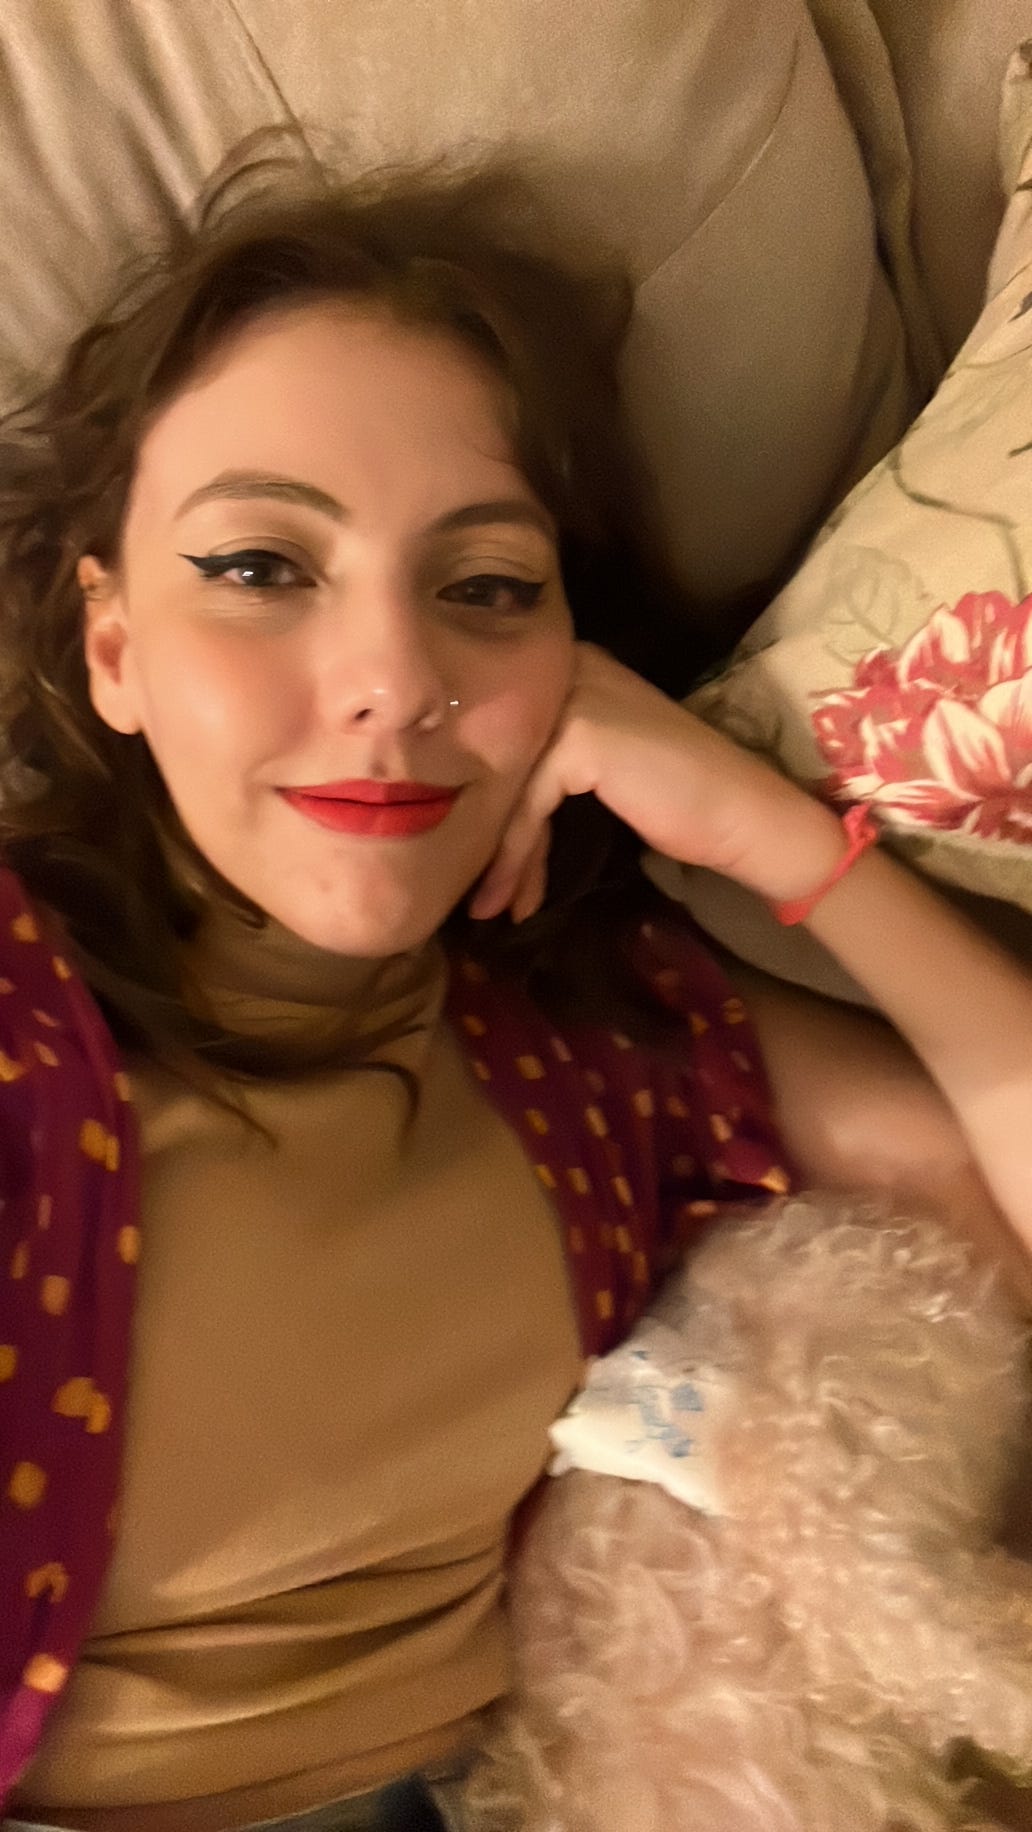 Mais uma selfie no ofá com cara de choro, mas dessa vez estou com um belo delineado de gatinho, batom rosa pink, kimono roxo com bolinhas amarelas e uma blusa da cor da pele